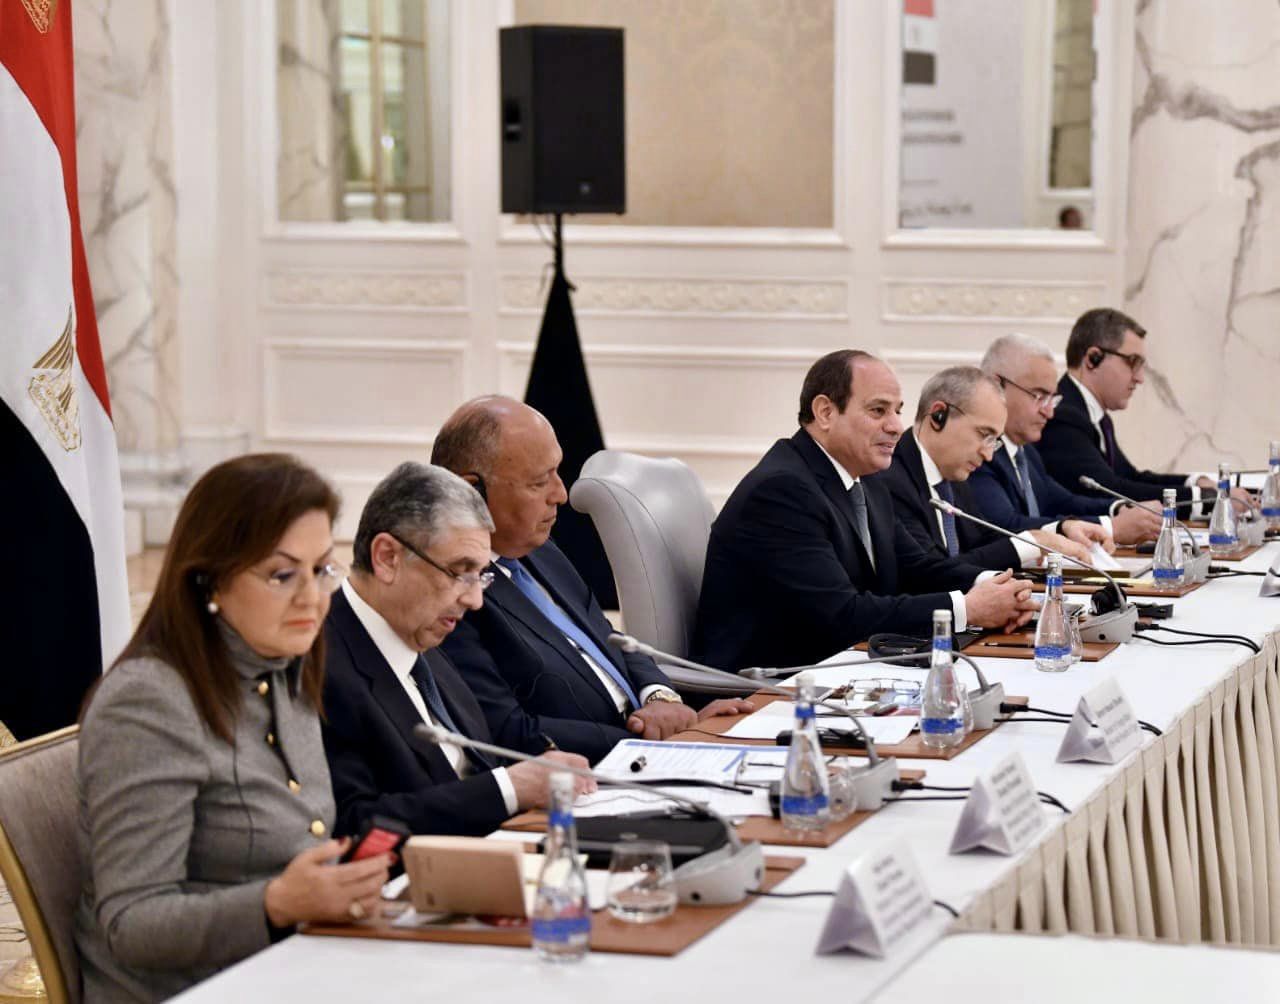  رجال الأعمال الآذربيجان : نتطلع لتعظيم الاستثمارات المشتركة مع مصر